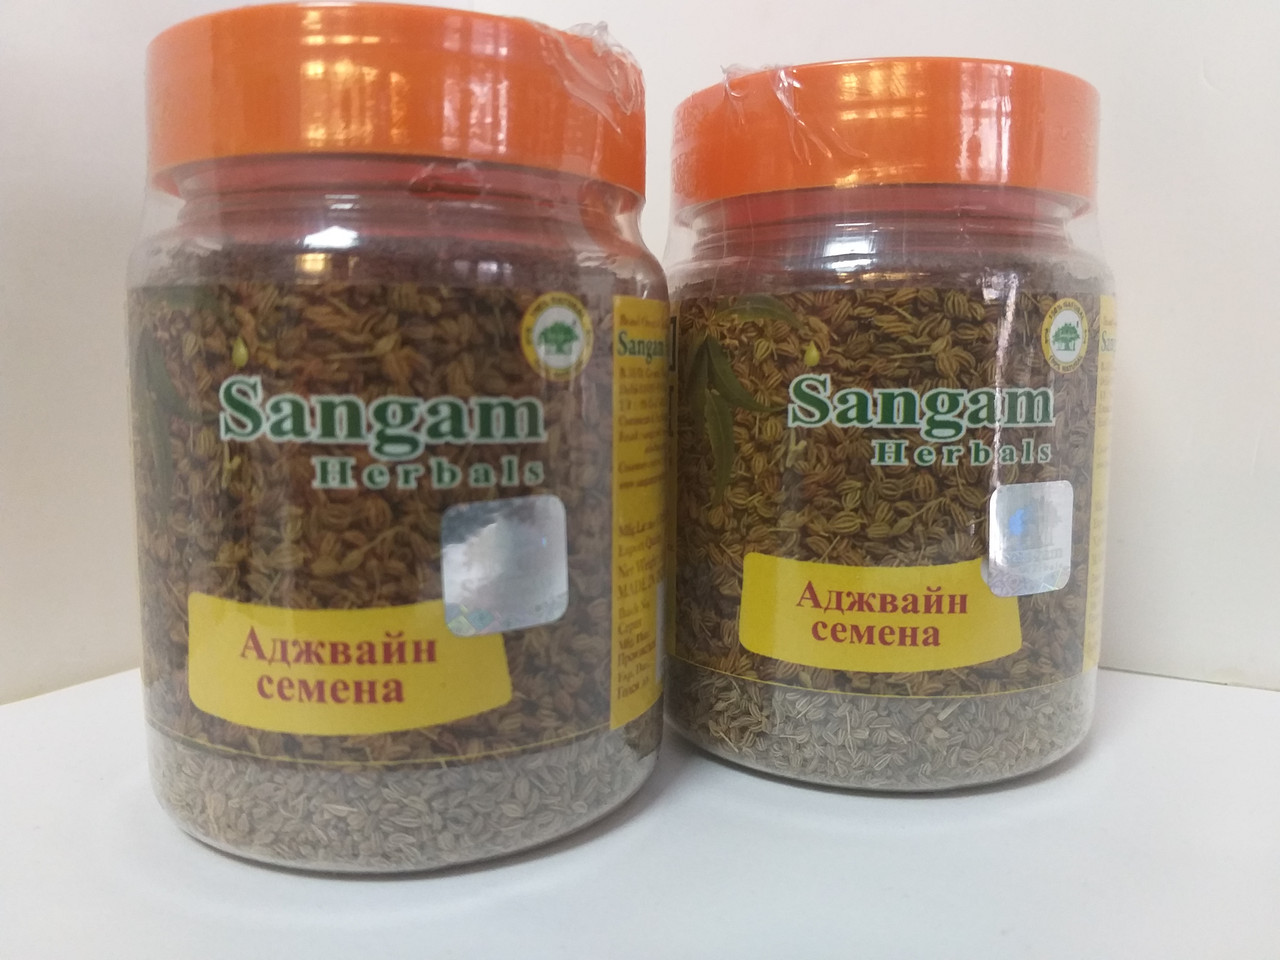 Аджвайн семена 80 гр, Sangam Herbals